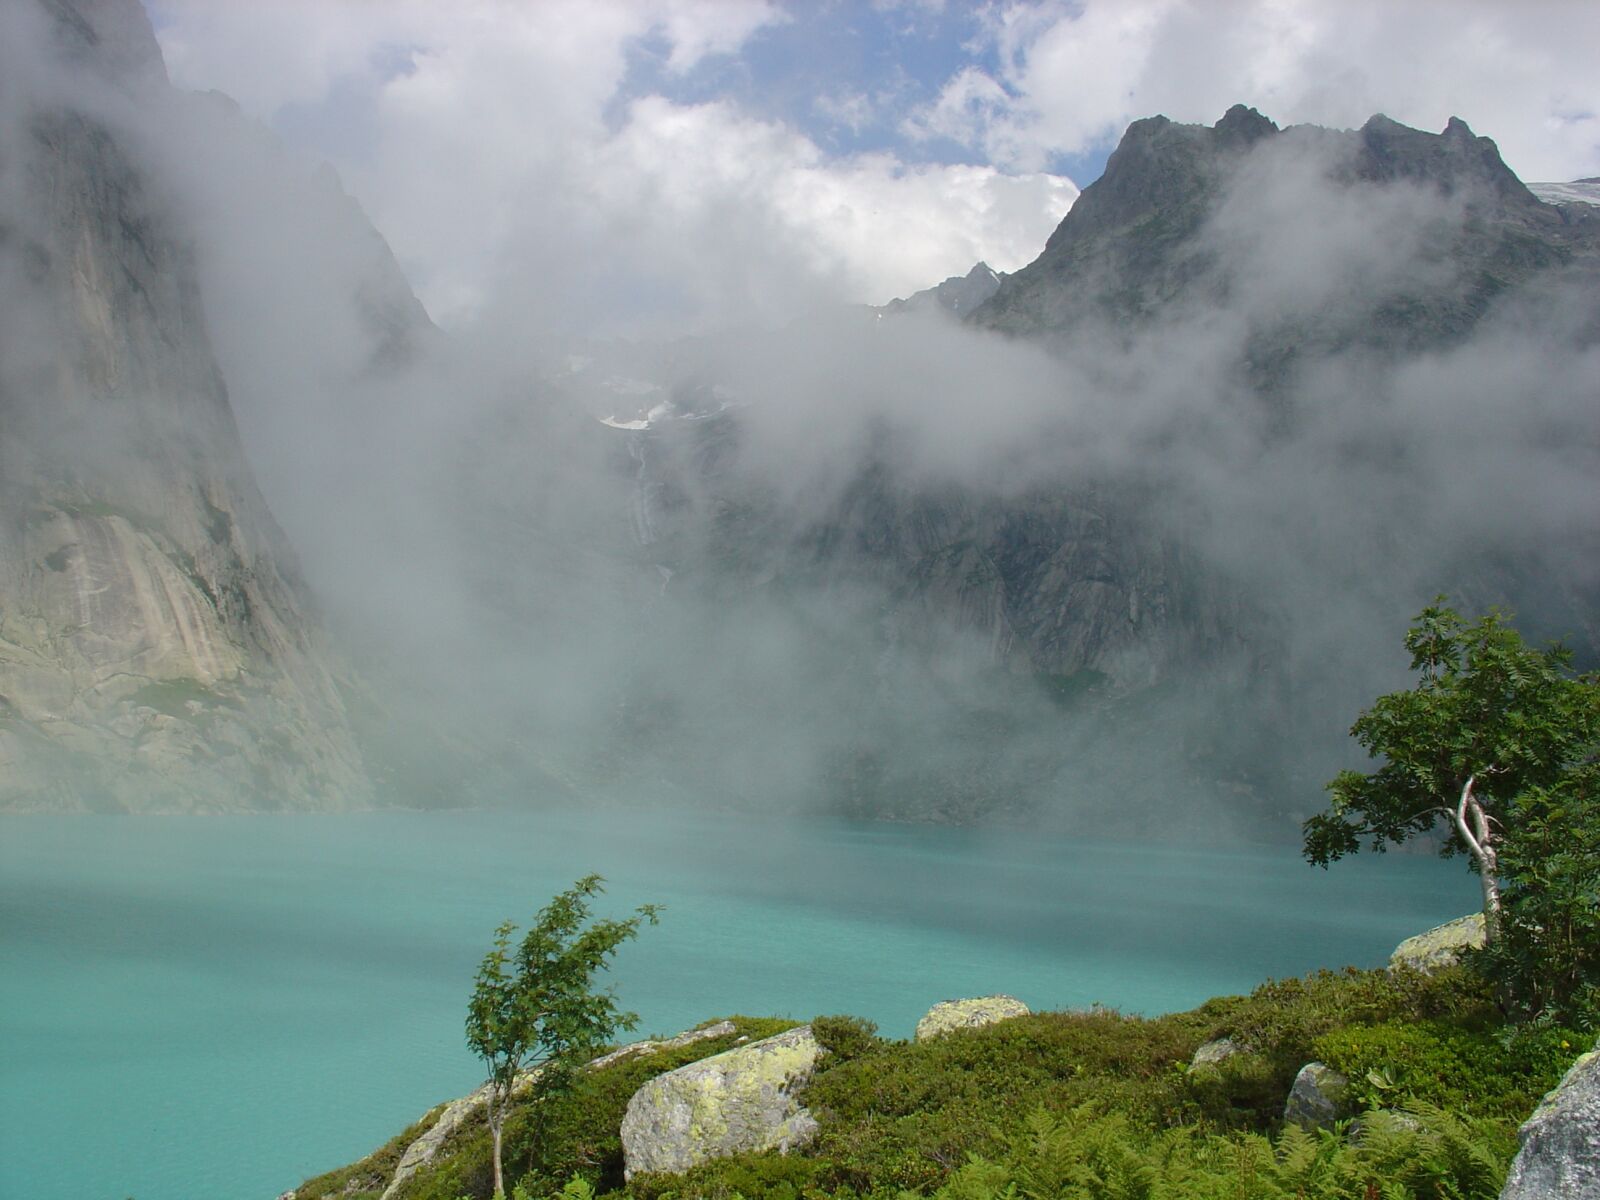 Sony DSC-V1 sample photo. Mountains, lake, landscape photography